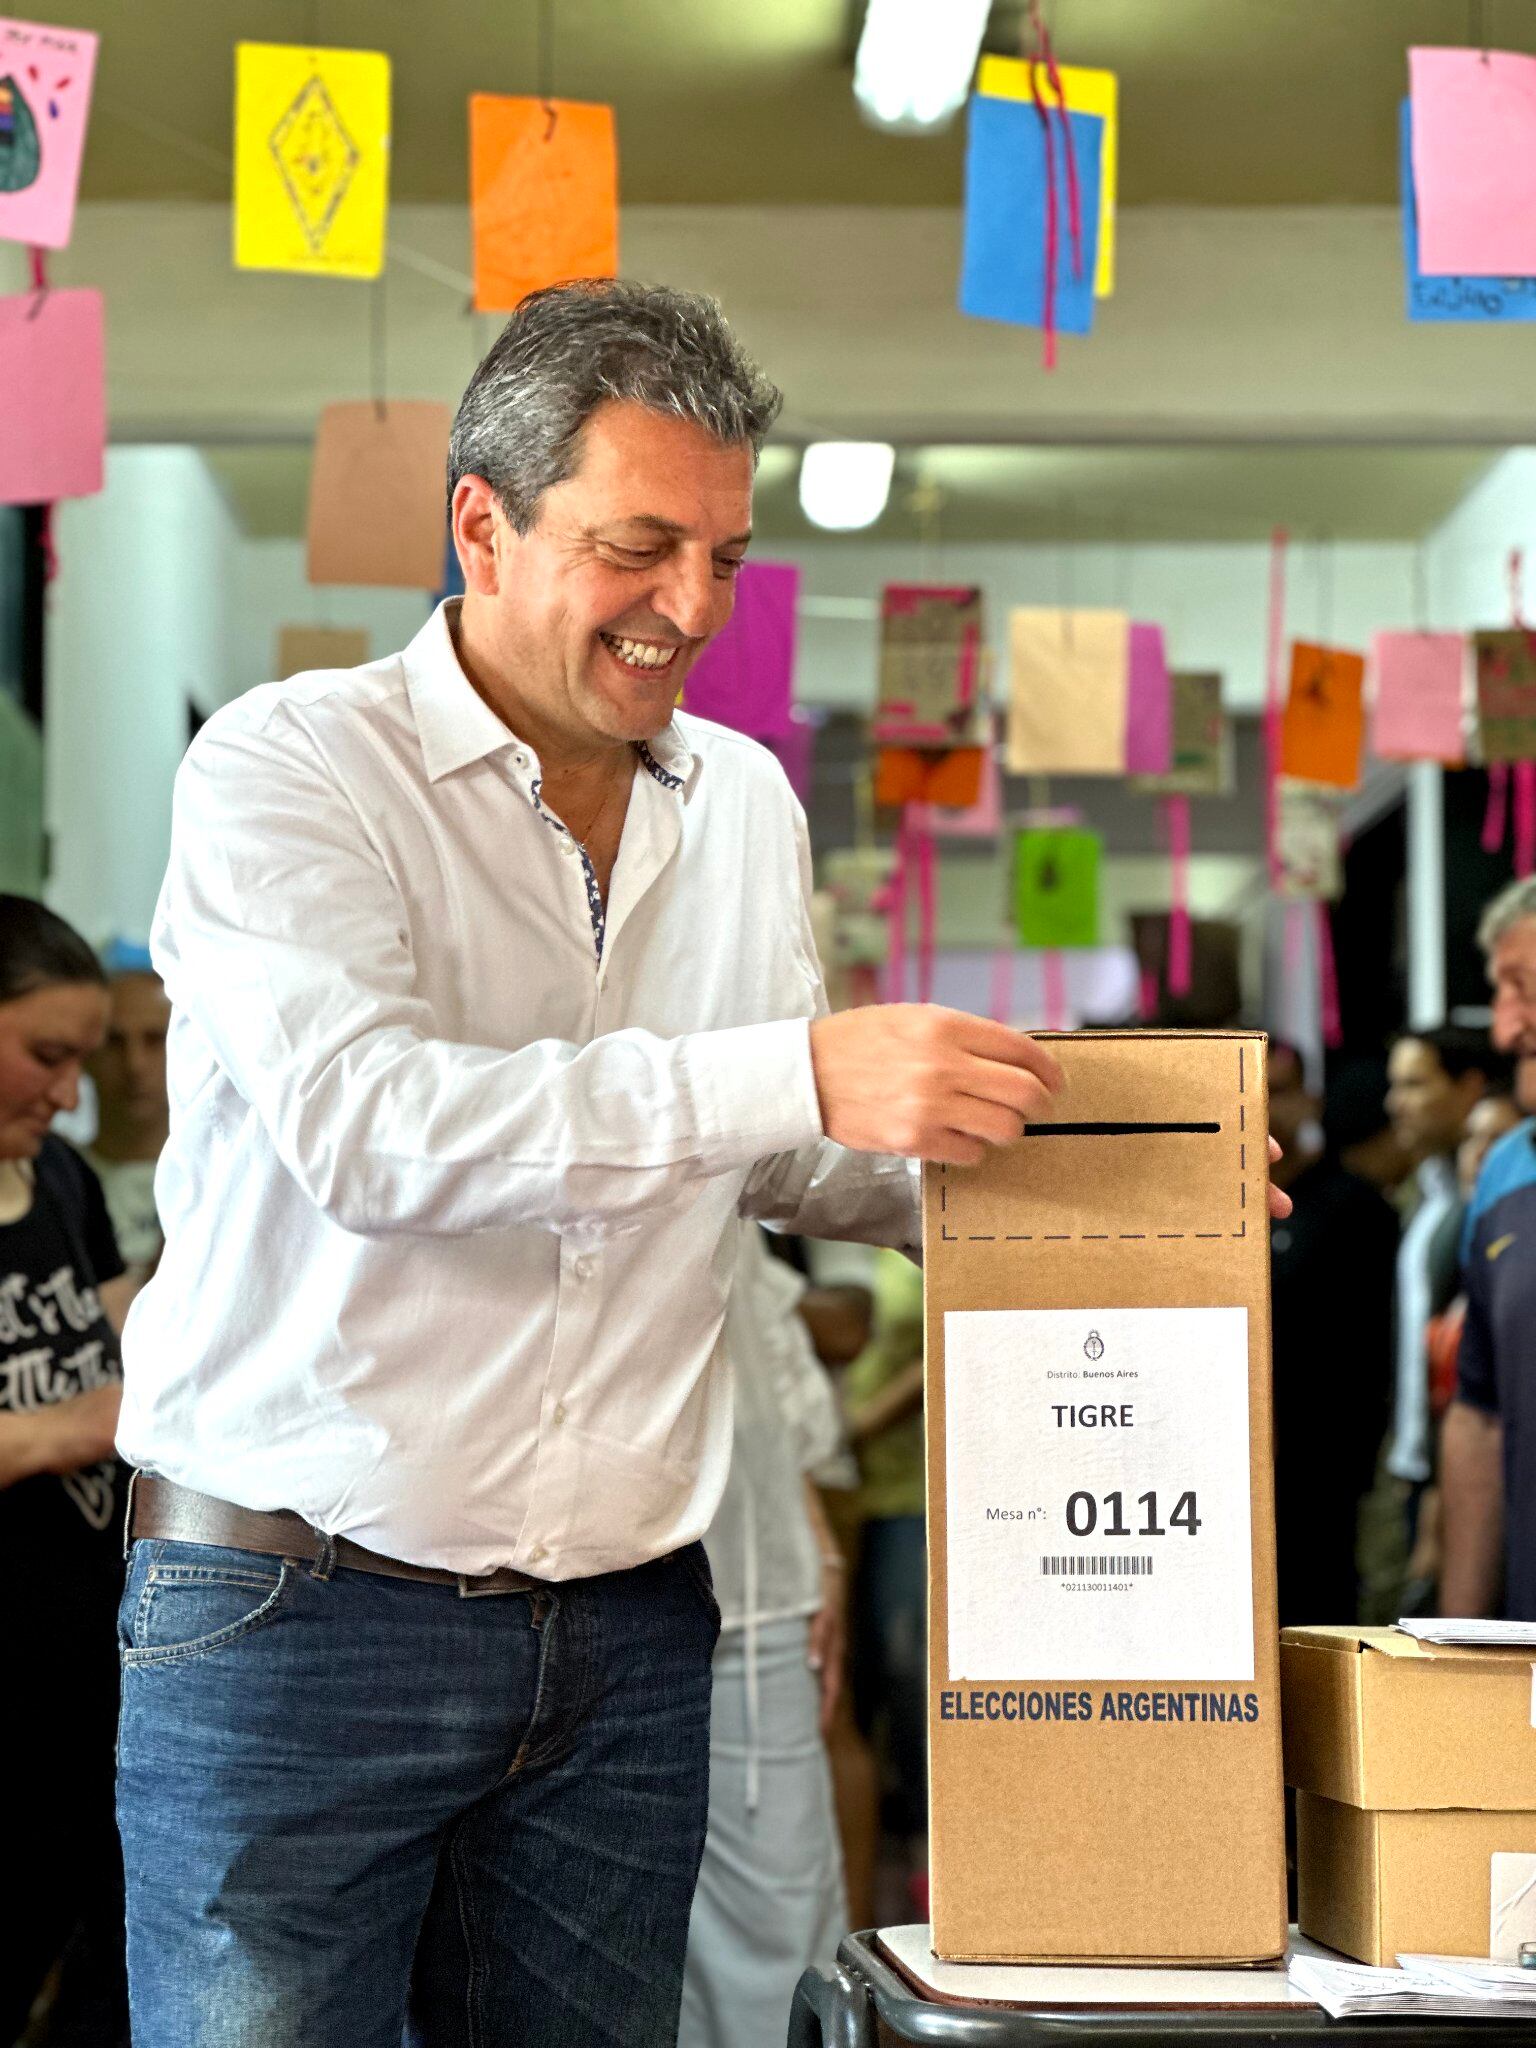 Sergio Massa depostia su voto en una urna en Tigre, en la provincia de Buenos Aires, el domingo 22 de octubre, en una imagen compartida en sus redes sociales.